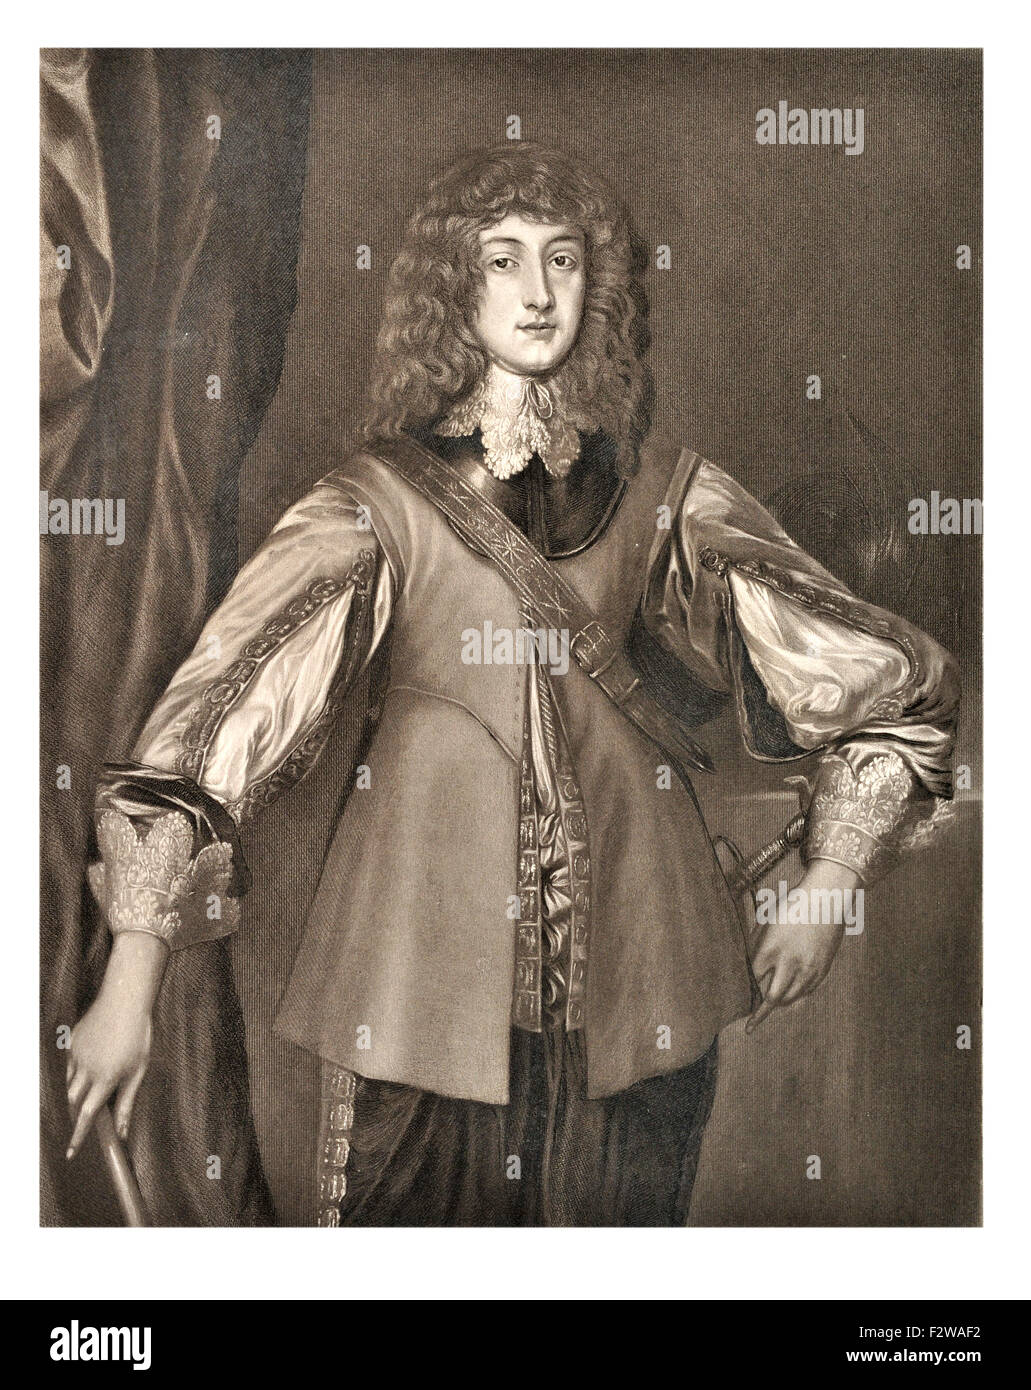 Prince Rupert von Rhein, 1619-1682), deutscher Soldat, Admiral, Wissenschaftler, Sportler, kolonialer Gouverneur amateur Künstler des 17. Jahrhunderts. Cavalier Stockfoto